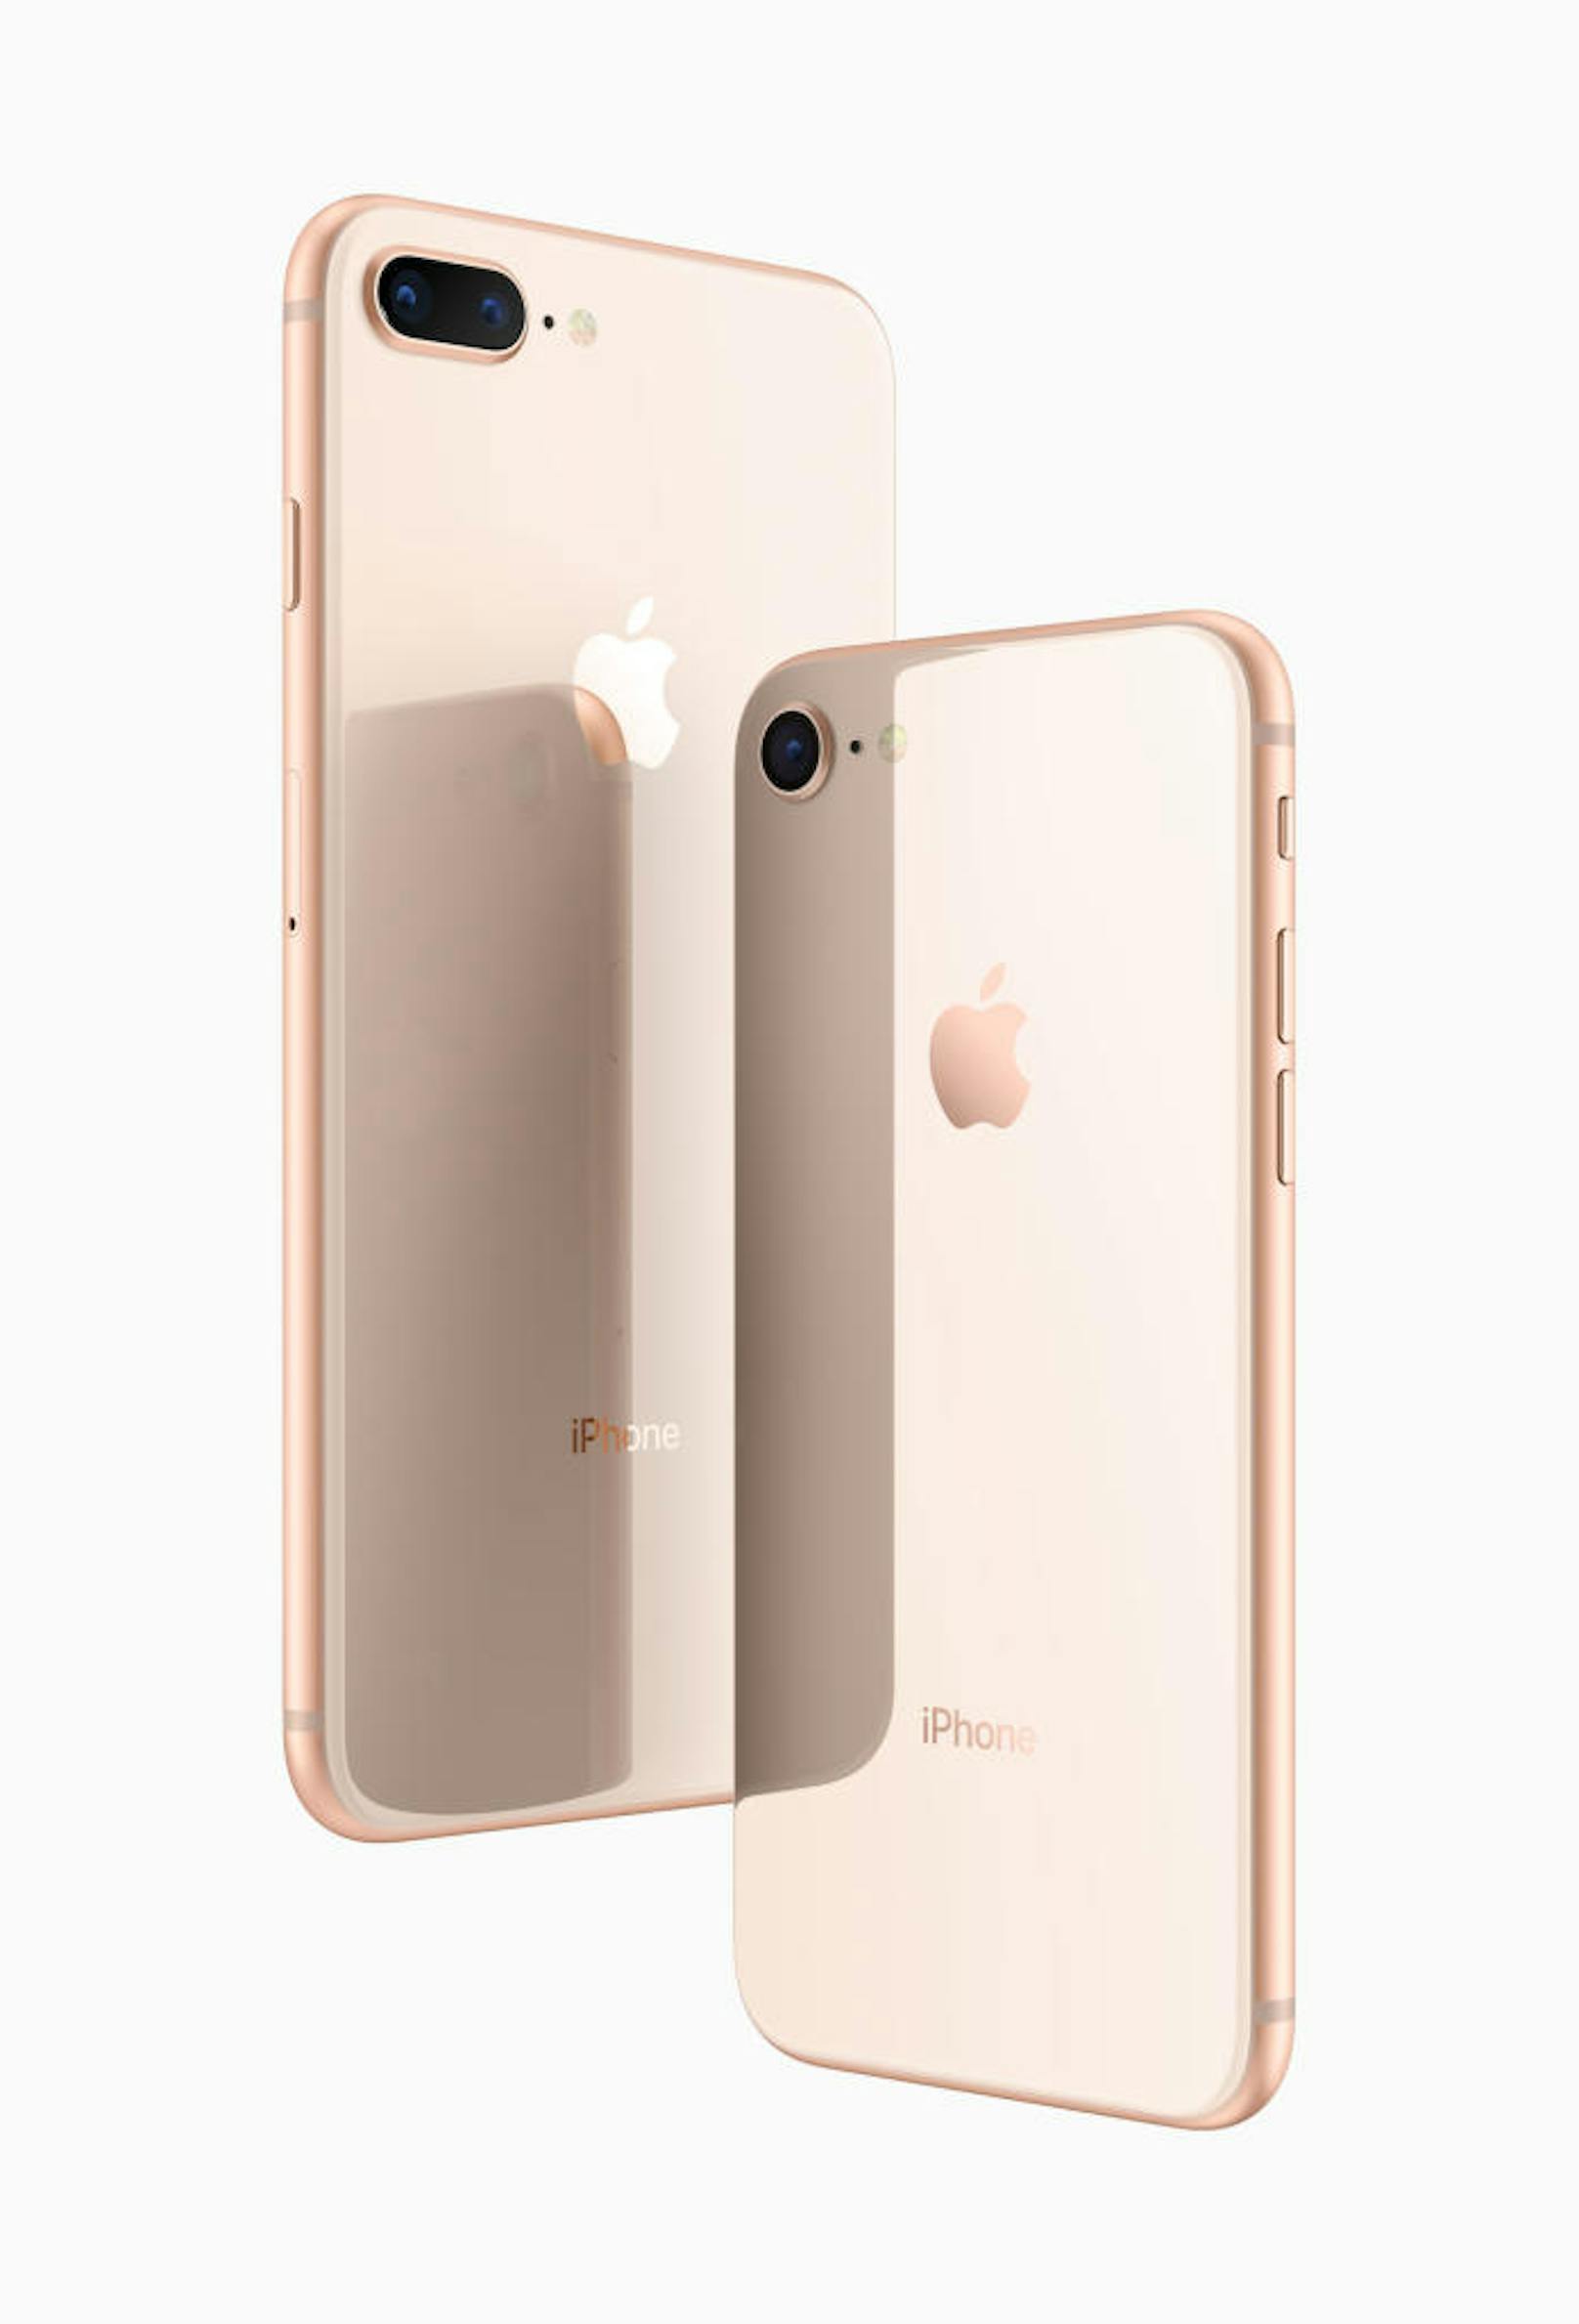 Die iPhone 8 Modelle konnten ab dem 15. September vorbestellt werden. Preisspanne: 799 Euro für das iPhone 8 mit 64 GB, 969 Euro für das iPhone 8 mit 256 GB, 909 Euro für das iPhone 8 Plus mit 64 GB, 1.079 Euro für das iPhone 8 Plus mit 256 GB.